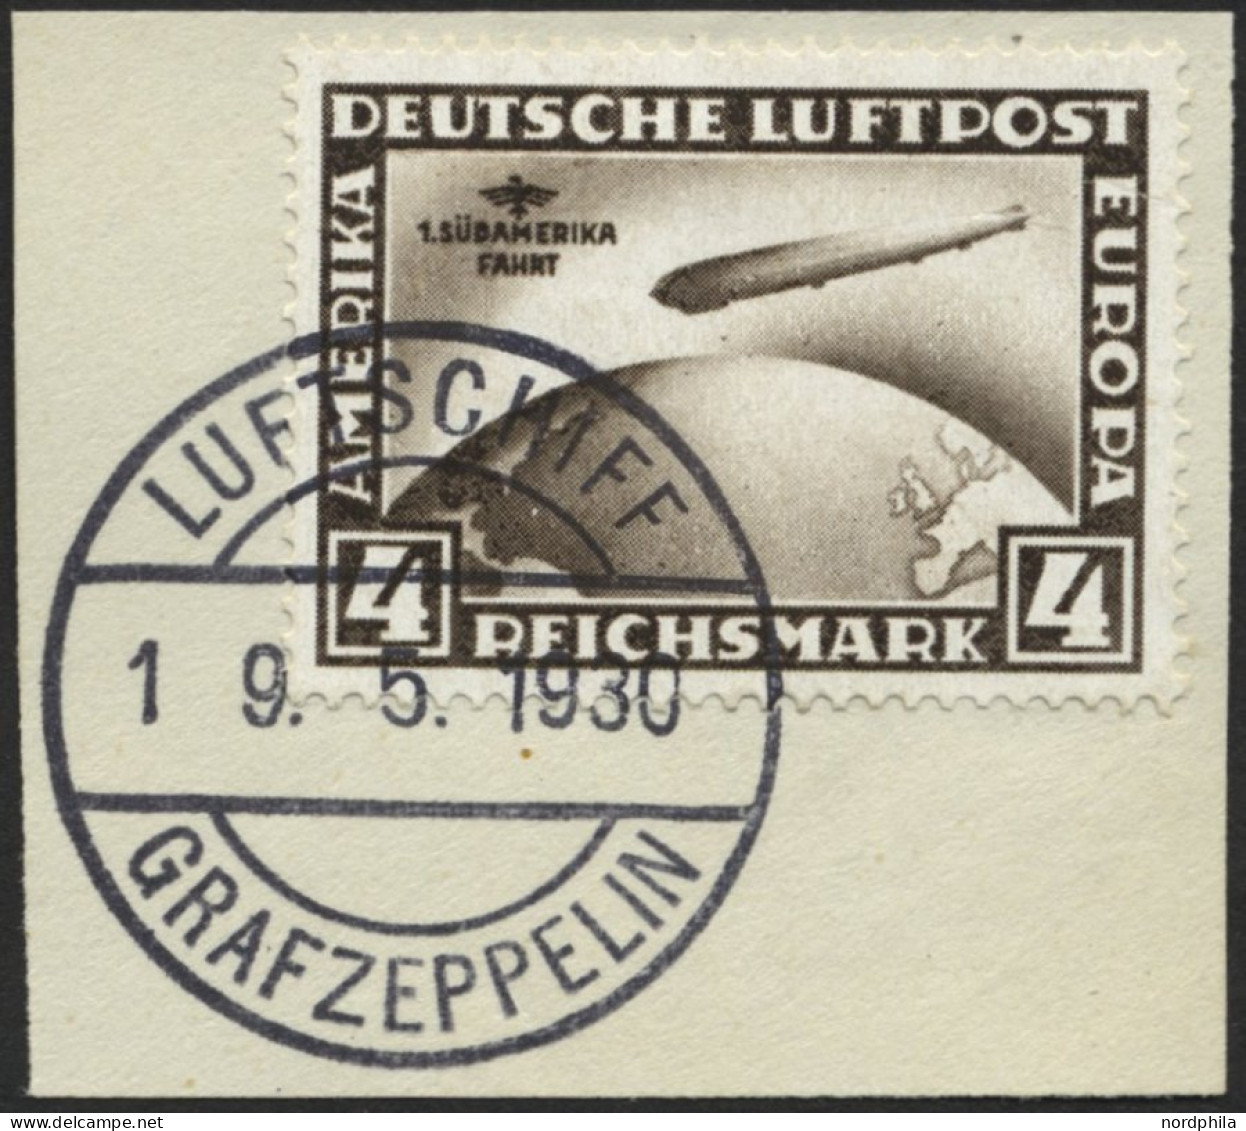 Dt. Reich 439X BrfStk, 1930, 4 RM Südamerikafahrt, Wz. Stehend, Prachtbriefstück, Mi. (400.-) - Used Stamps